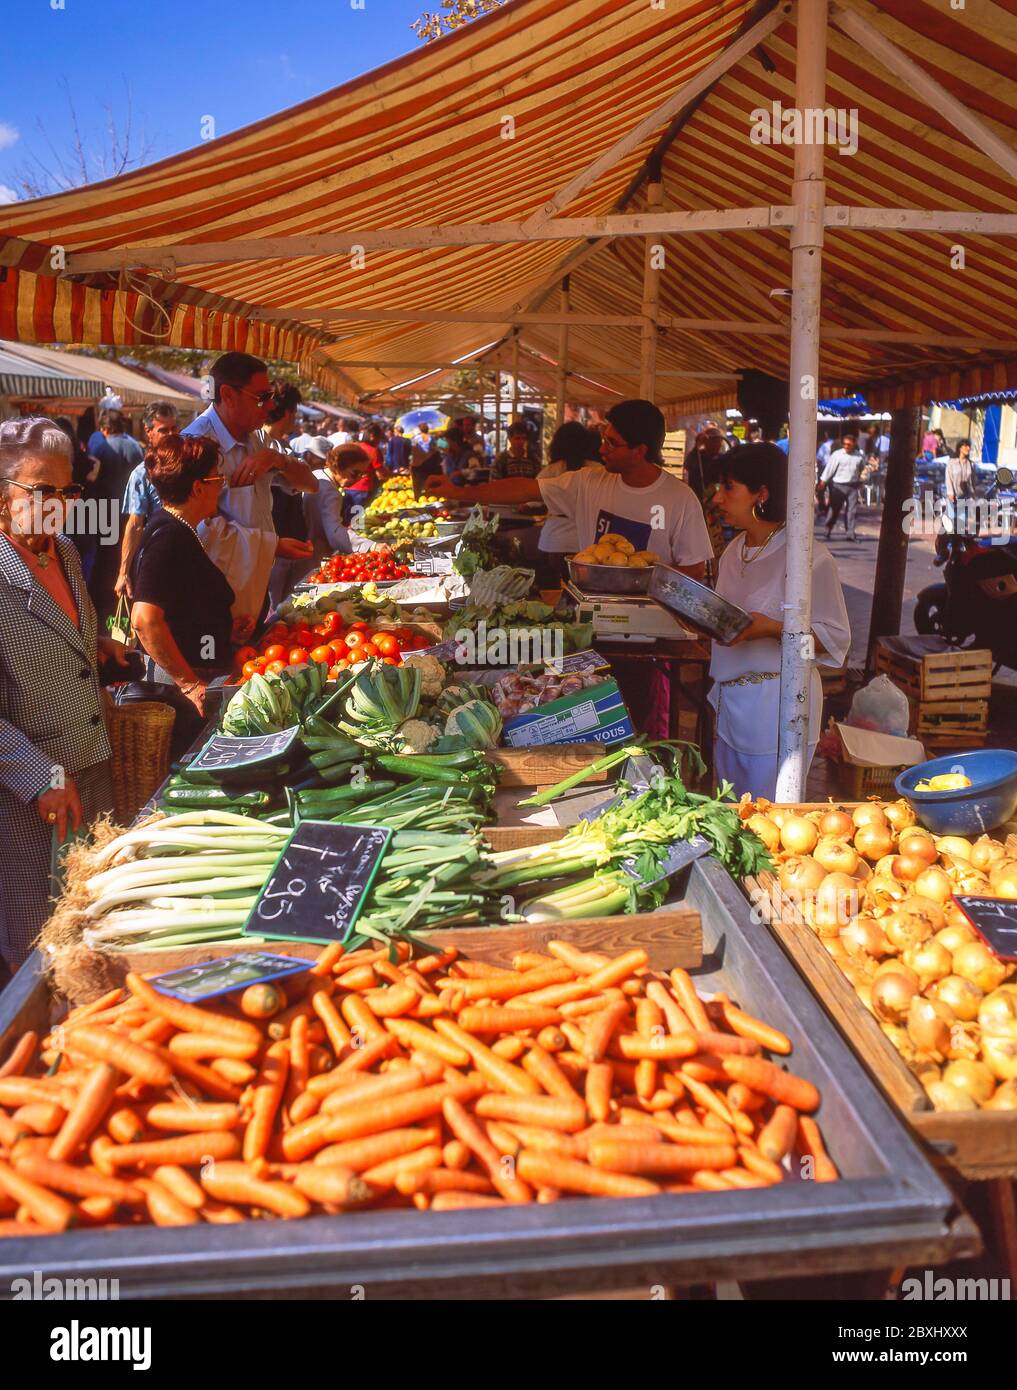 La résidence de légumes du marché du cours Saleya, la vieille ville (Vieux Nice), Nice, Côte d'Azur, Alpes-Maritimes, Provence-Alpes-Côte d'Azur, France Banque D'Images